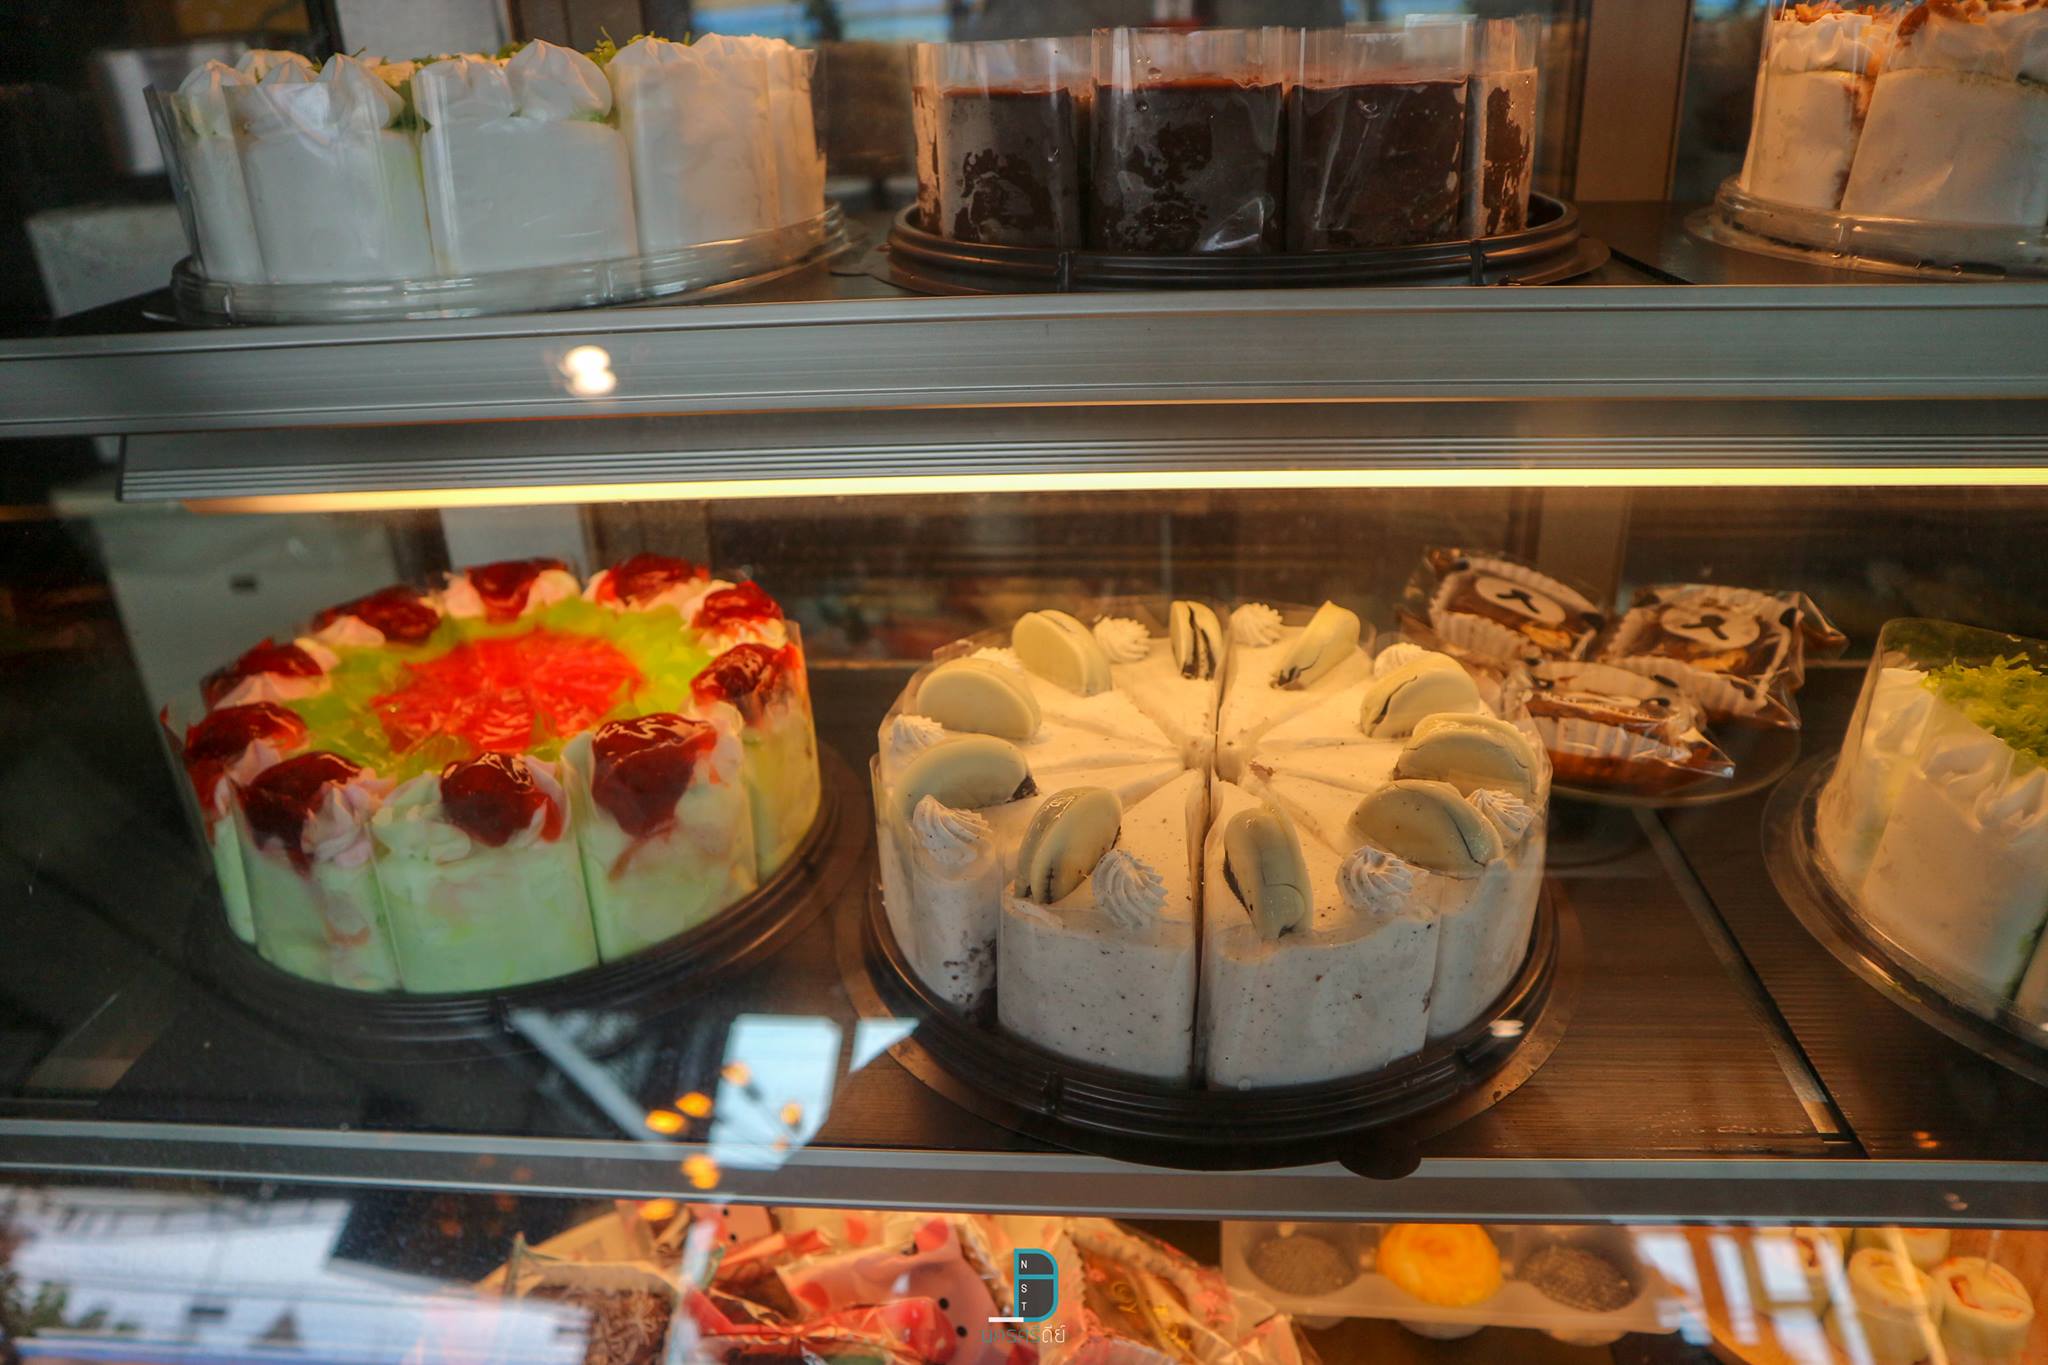  เค้กกกกก-อยากกิน-555
 jbgrandpark,ช้างกลาง,นครศรีธรรมราช,ของกิน,ร้านอร่อย,ร้านเด็ด,ที่พัก